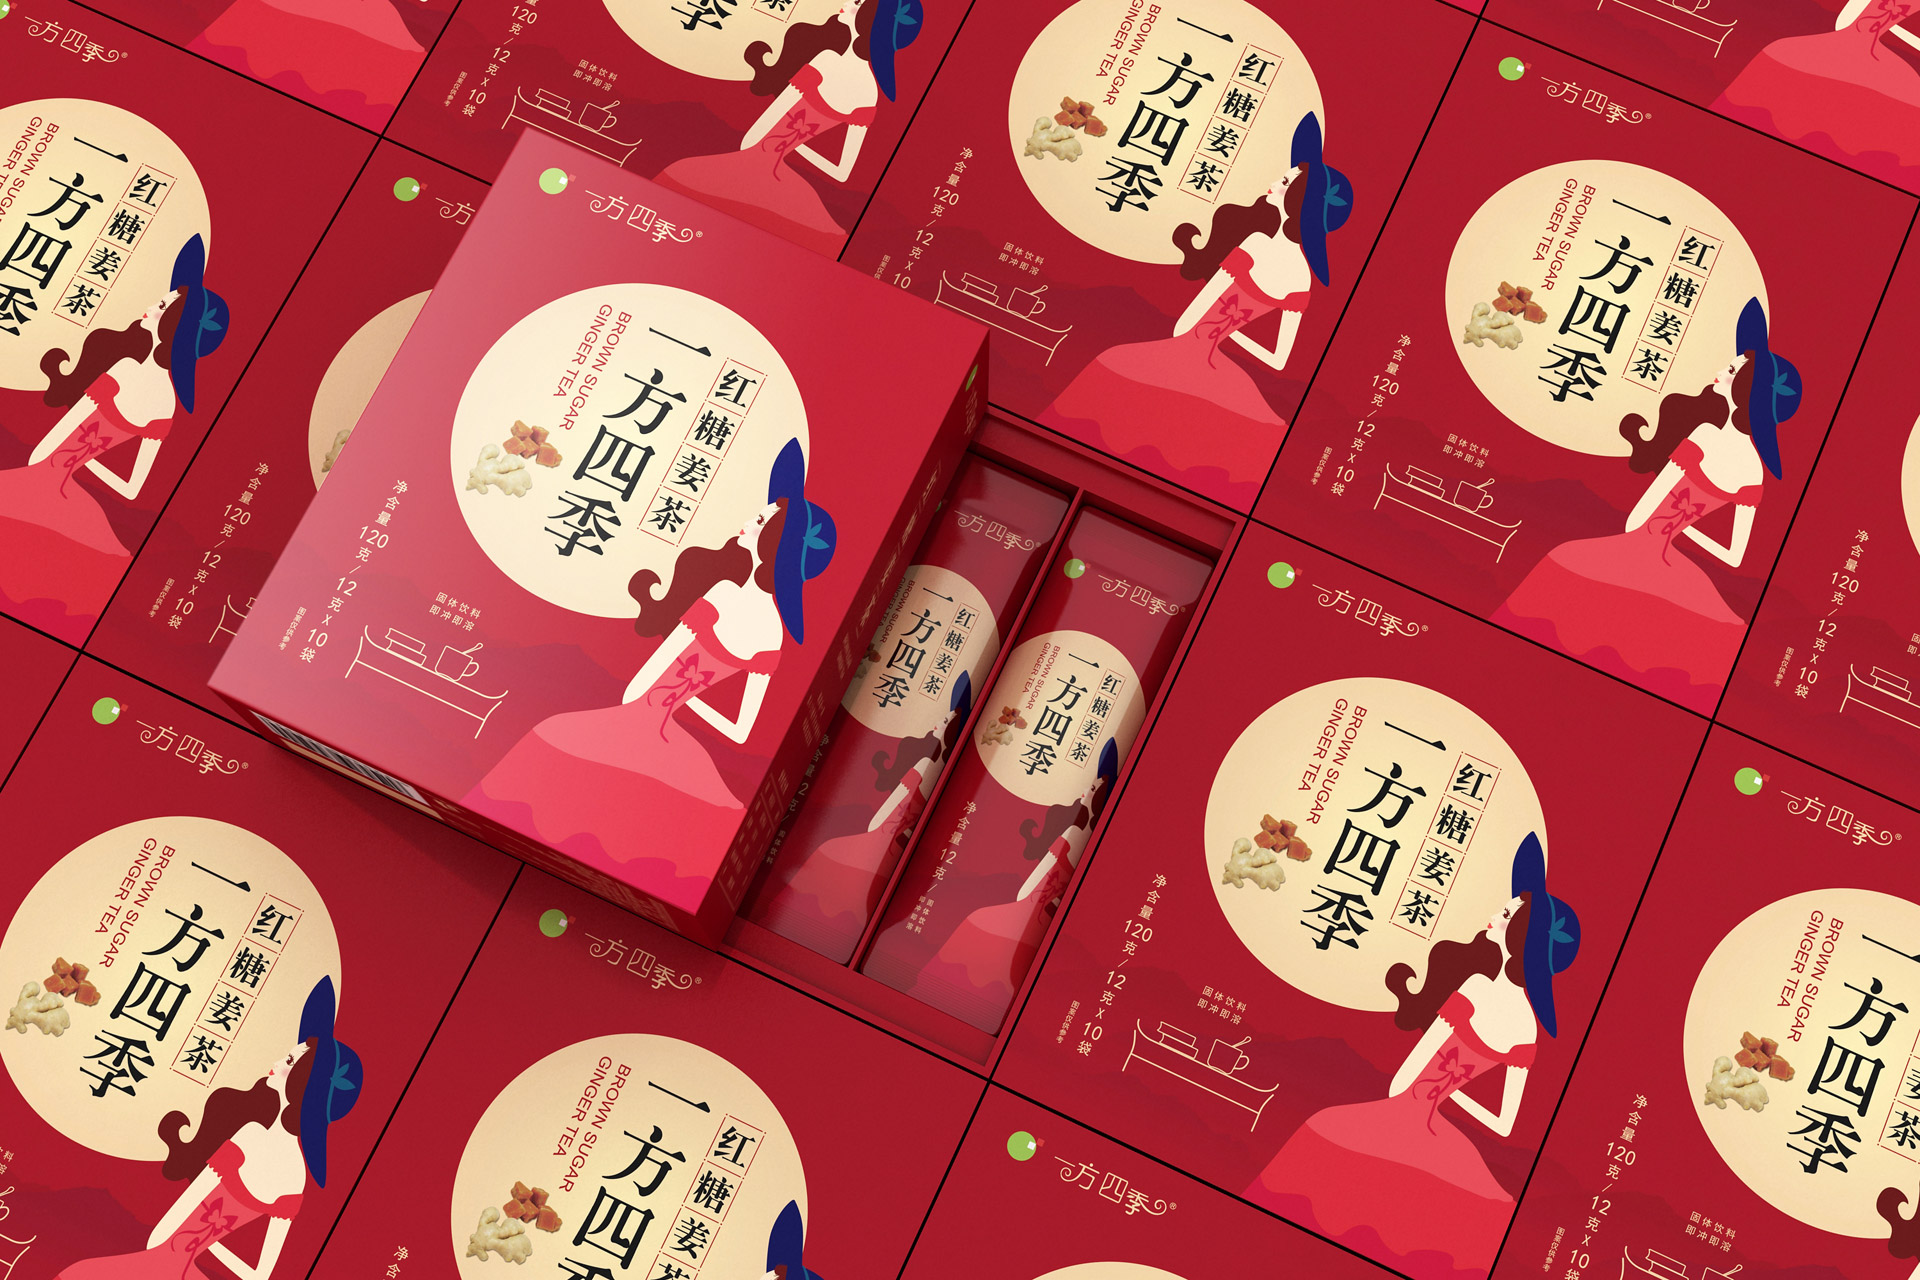 上海茶饮料包装设计，红枣姜茶包装设计，固体茶饮料包装设计公司，上海固体饮料包装设计,食品包装设计公司,上海食品包装设计公司,产品包装设计公司,保健品包装设计公司,品牌包装设计公司